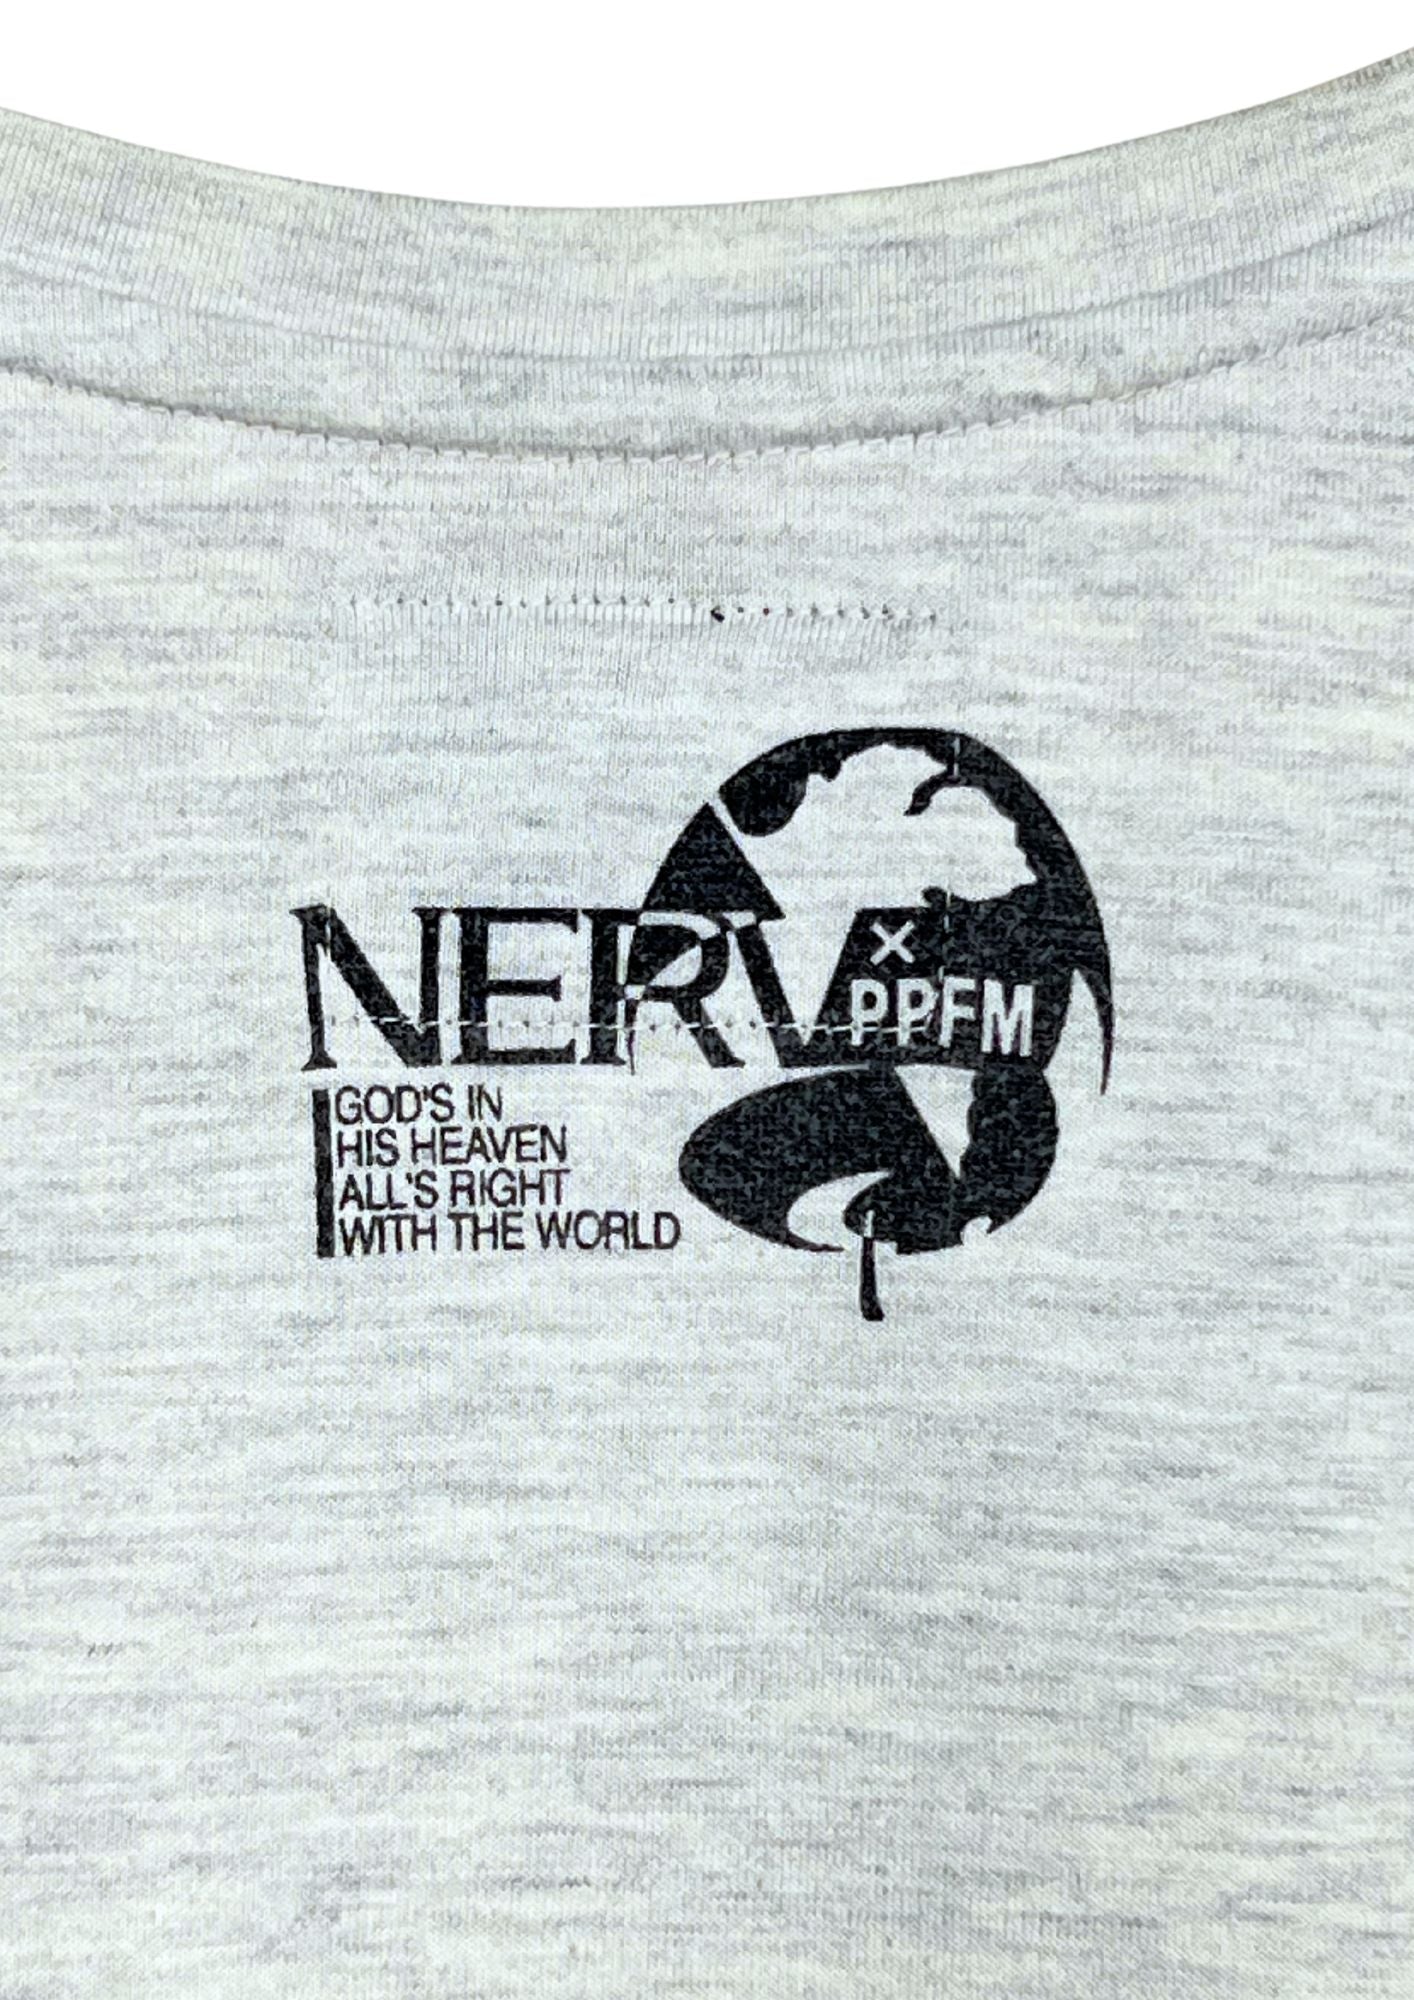 2012 Neon Genesis Evangelion x PPFM EVA 01  'It's gone berserk!?' T-shirt